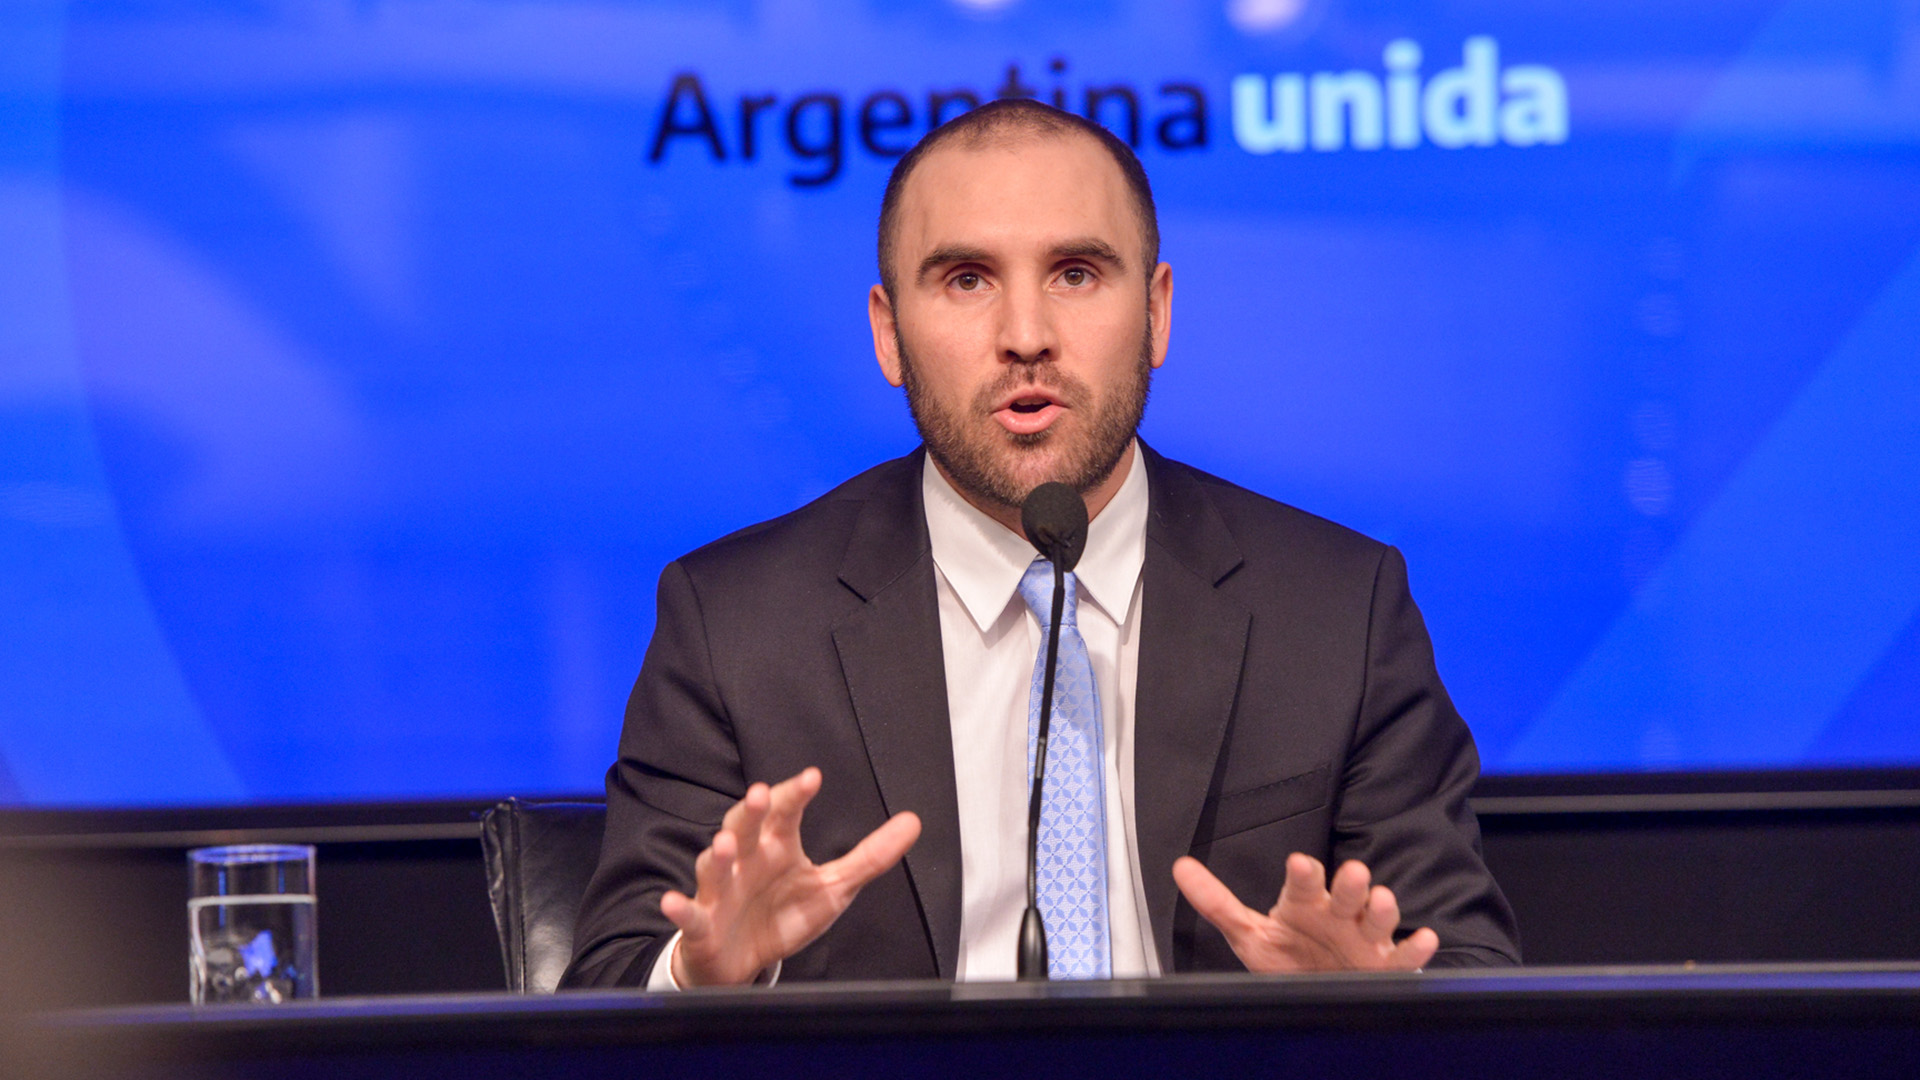 El ministro de Economía Martín Guzmán dio los detalles de gastos y recursos para el año 2021. Se trata del proyecto que se debatirá en el Congreso y que se convertirá en el primer presupuesto de la gestión de Alberto Fernández.